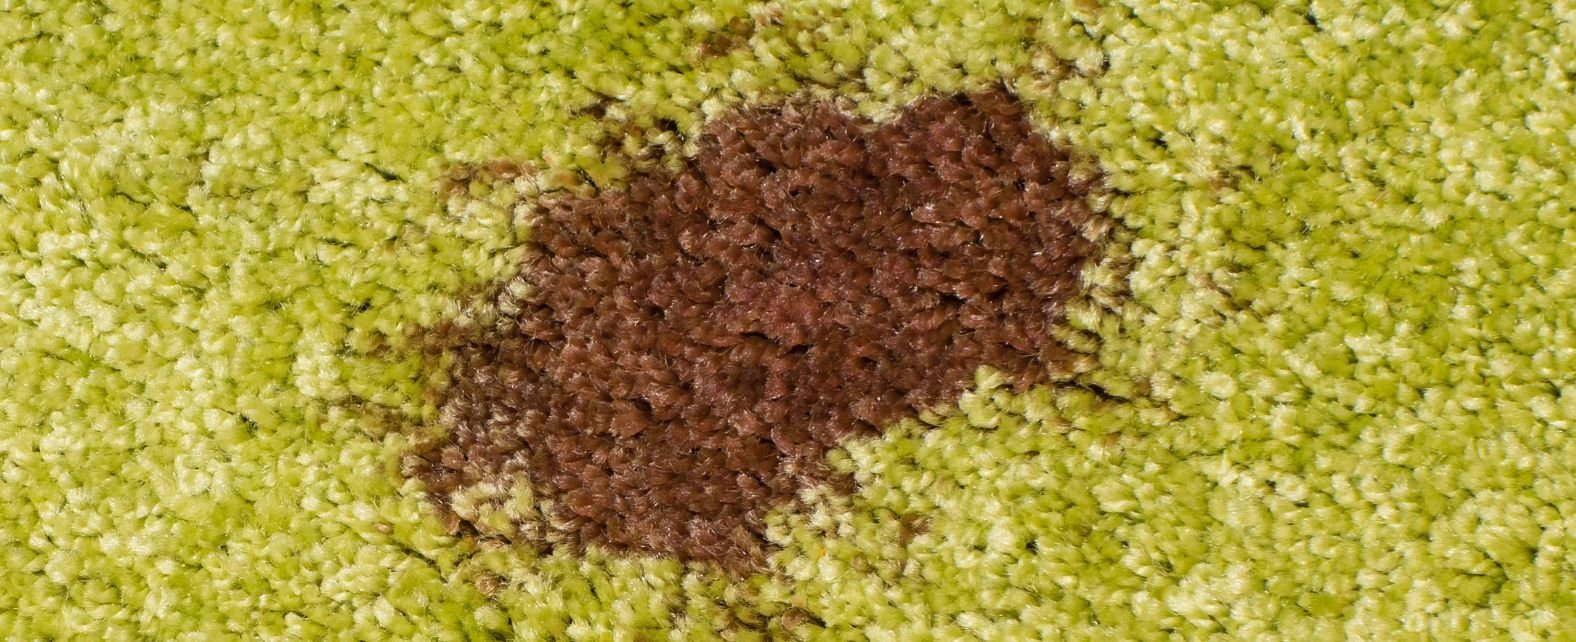 Taches de chocolat sur la face d’un tapis vert